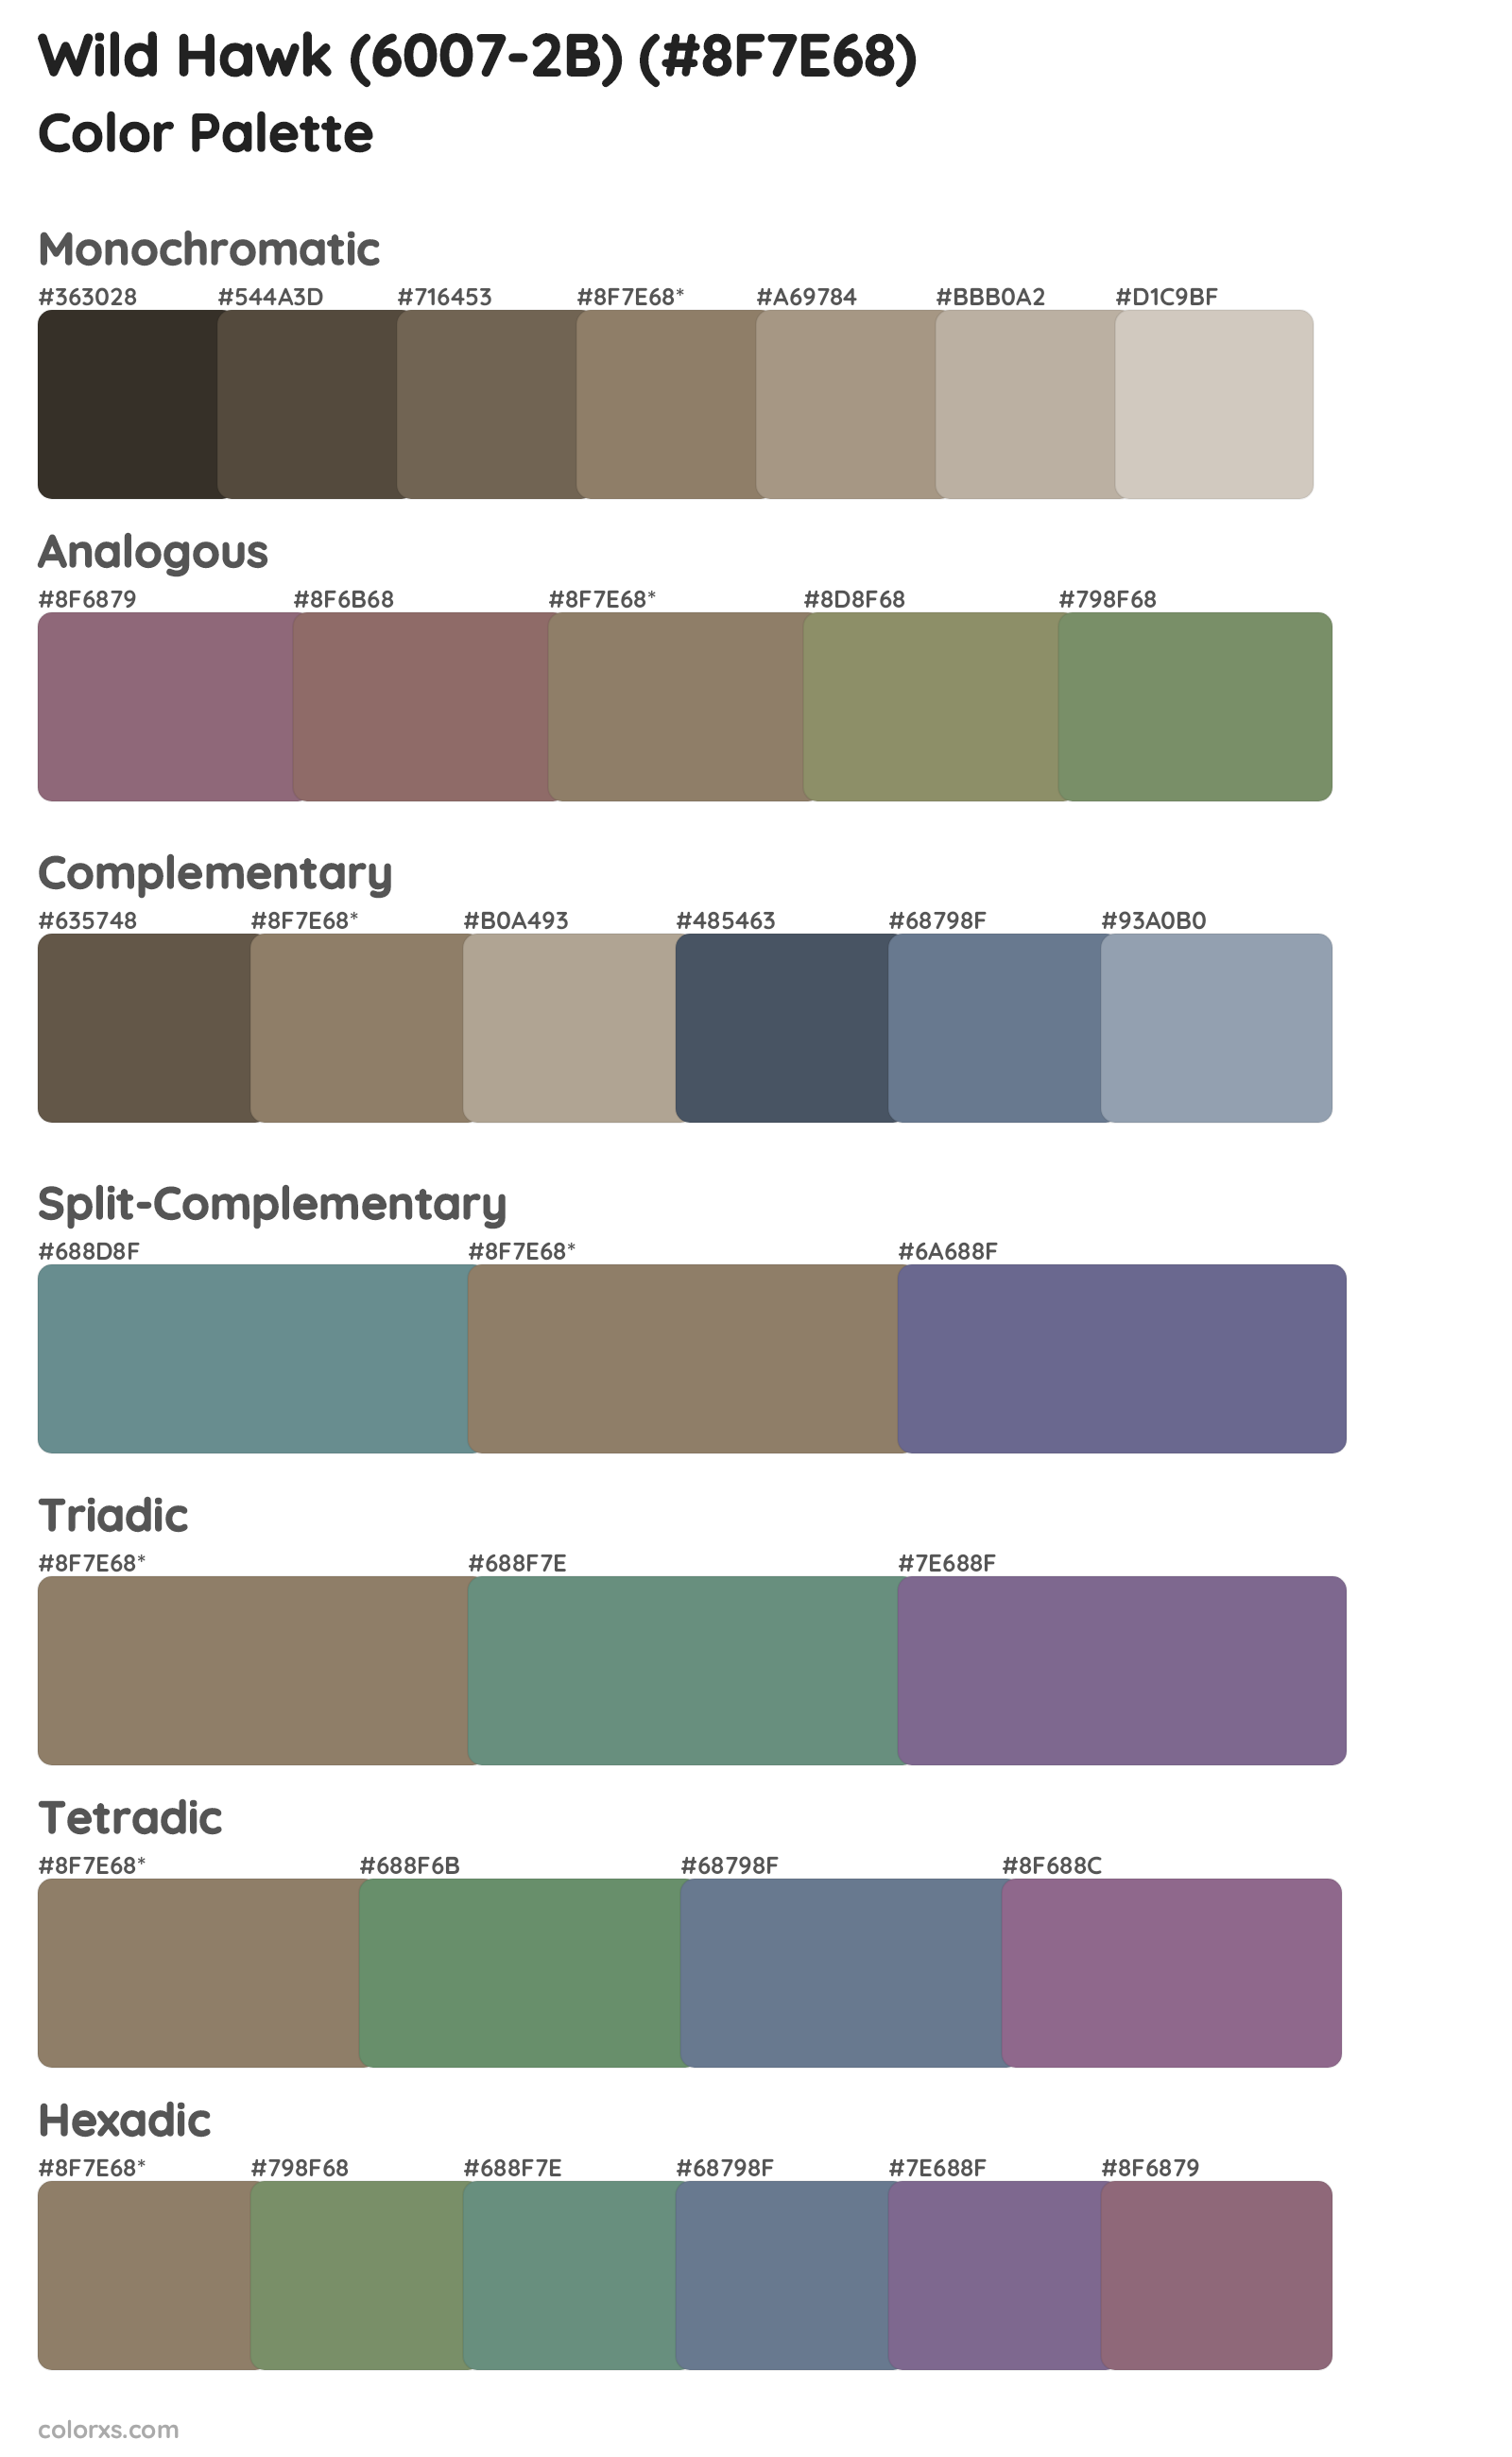 Wild Hawk (6007-2B) Color Scheme Palettes